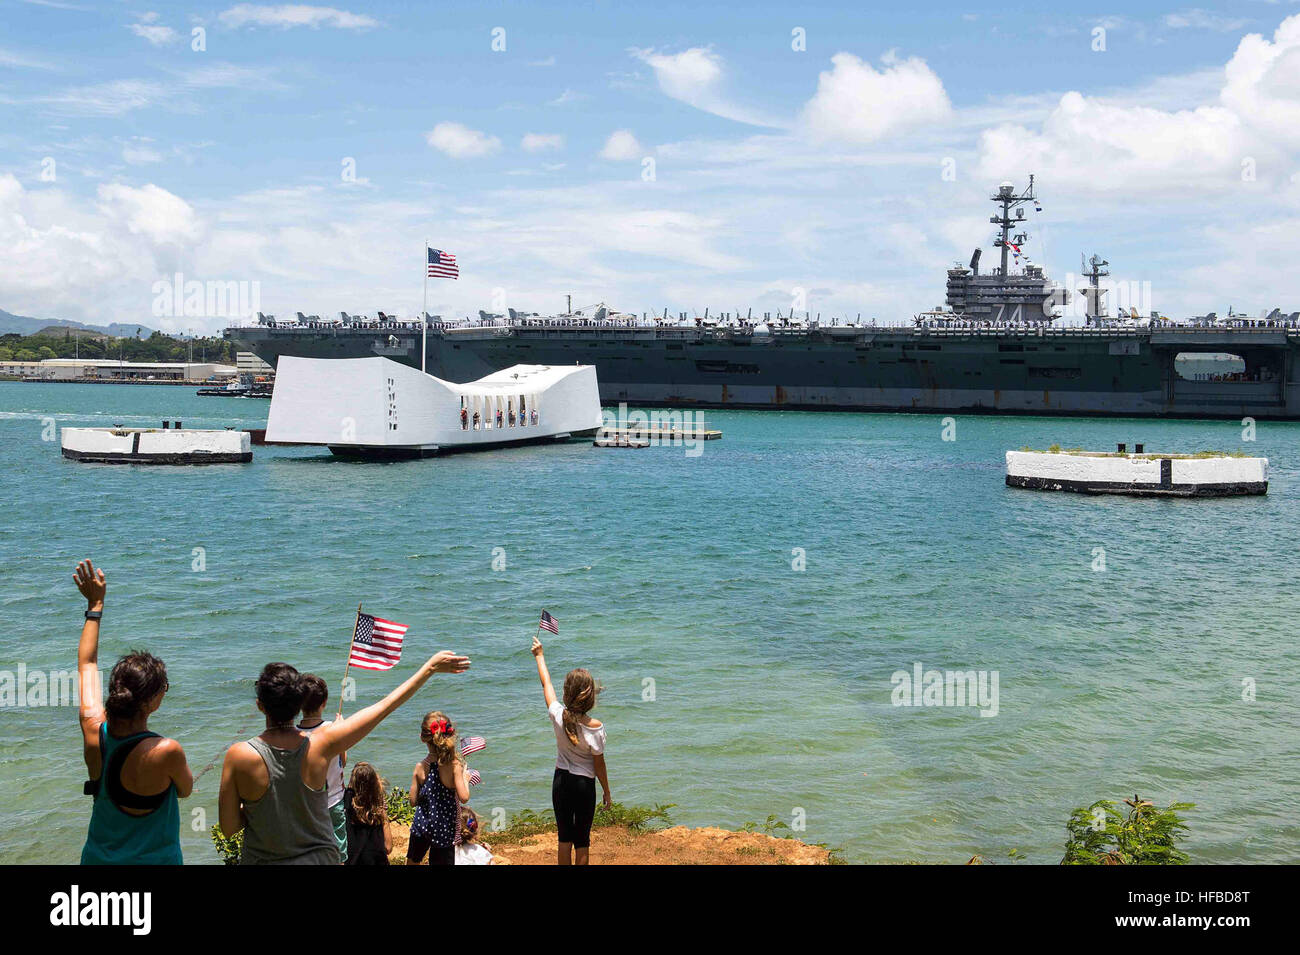 PEARL HARBOR (29 giugno 2016) le famiglie come onda la Nimitz-class portaerei USS John C. Stennis (CVN 74) rende onore a USS Arizona Memorial come la nave si prepara per ormeggiare in corrispondenza della giunzione base navale Pearl Harbor-Hickam a partecipare a bordo della Pacific 2016. Venti-sei nazioni, più di 40 navi e sottomarini, più di 200 aerei e 25.000 personale partecipano RIMPAC dal 30 giugno al 4 agosto, in e intorno alle Isole Hawaii e la California del Sud. Il più grande del mondo marittimo internazionale esercitazione RIMPAC offre una singolare opportunità di formazione che aiuta i partecipanti a fo Foto Stock